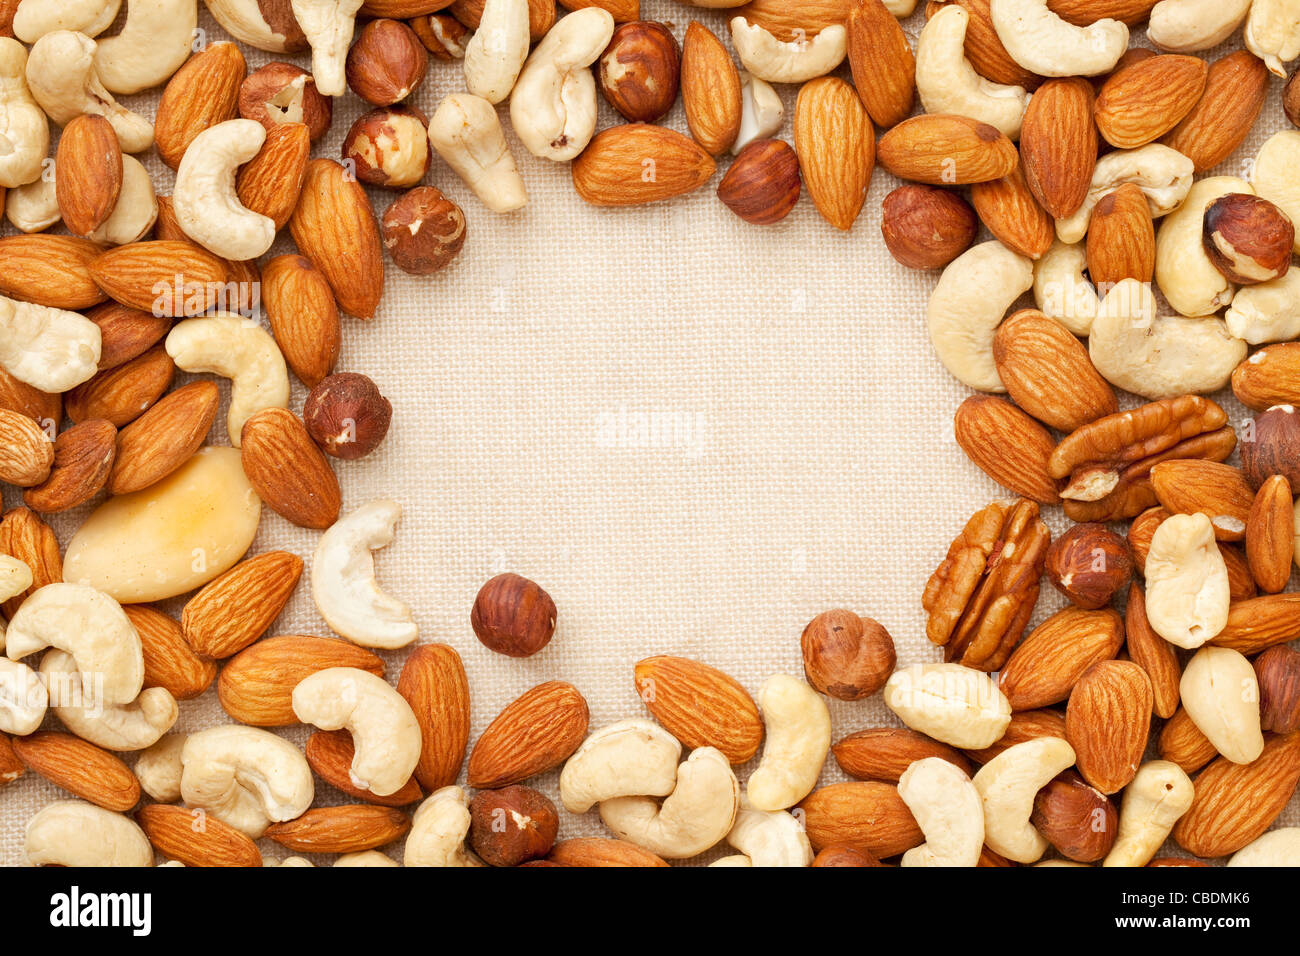 nut mix (walnut, almond, brazilian, hazelnut, cashew) on canvas with a copy space Stock Photo